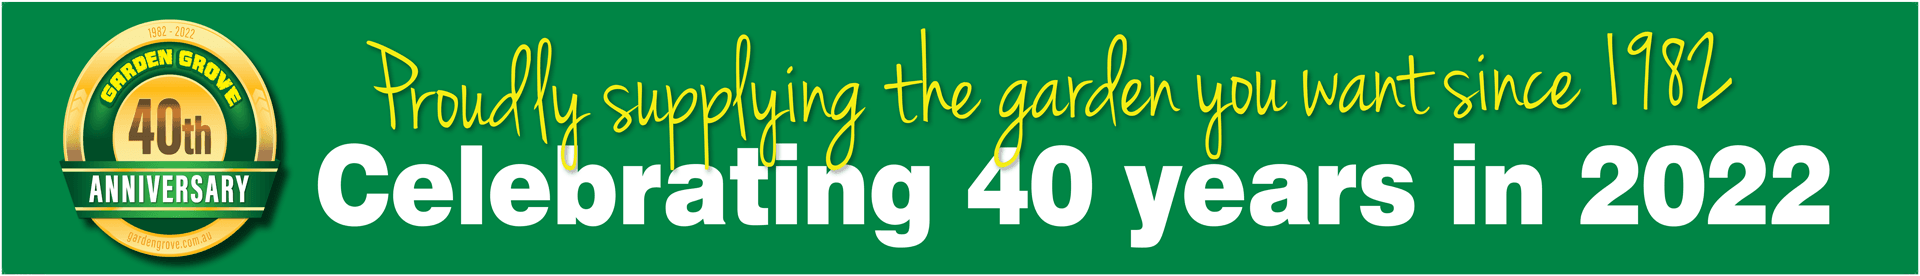 Garden Grove logo